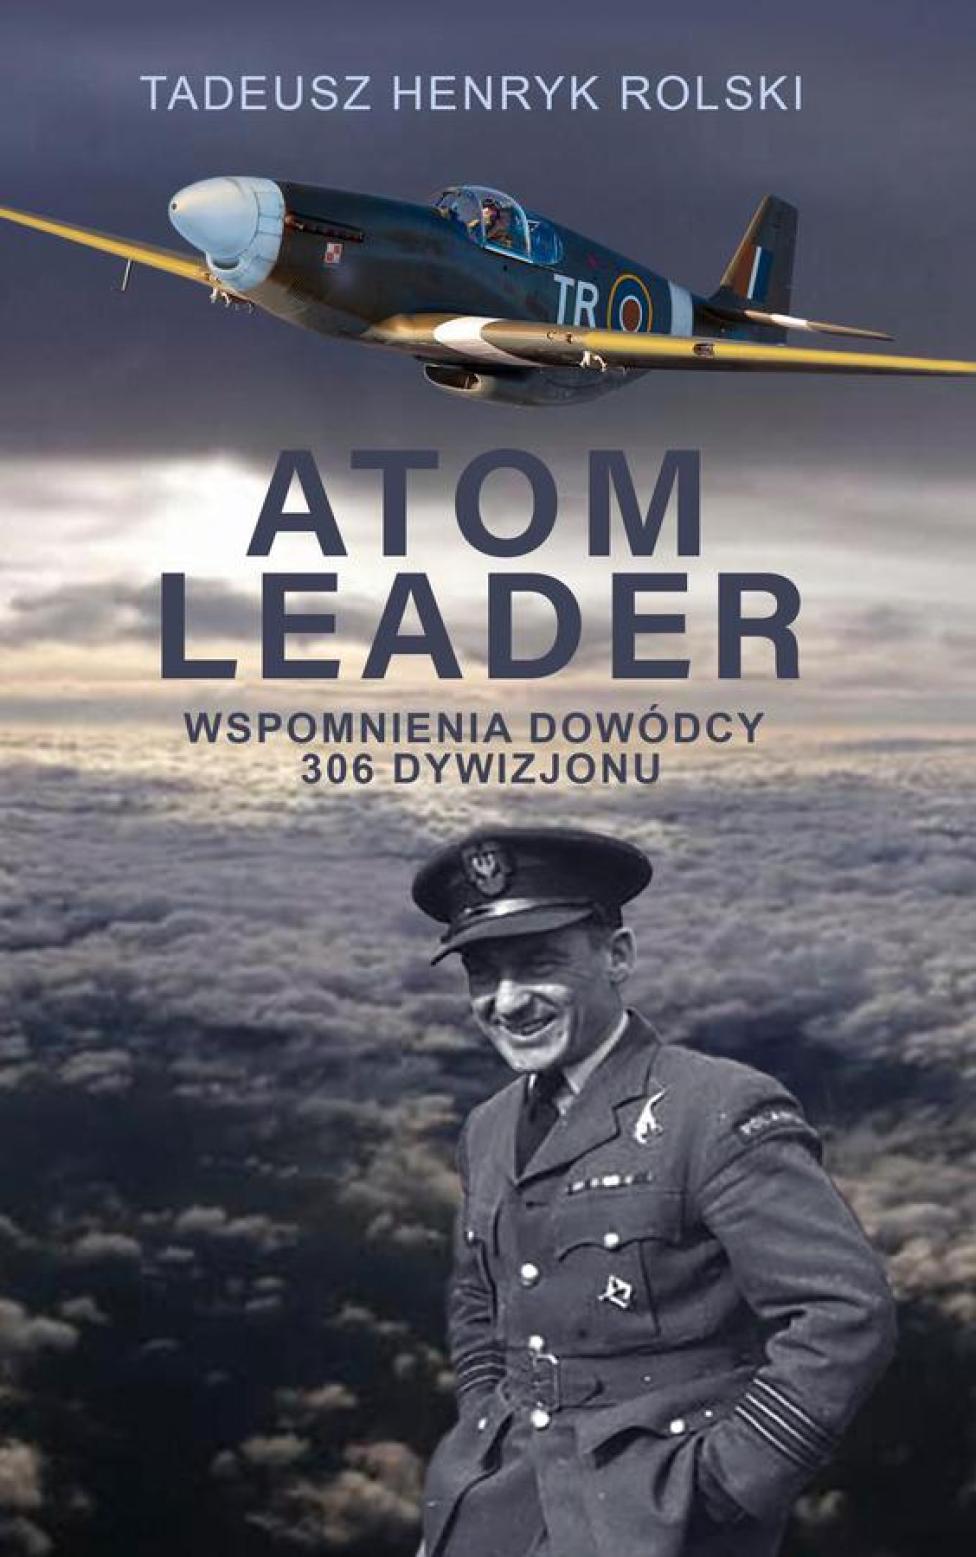 Książka "ATOM LEADER – wspomnienia dowódcy 306 dywizjonu" (fot. 22. Ośrodek Dowodzenia i Naprowadzania)